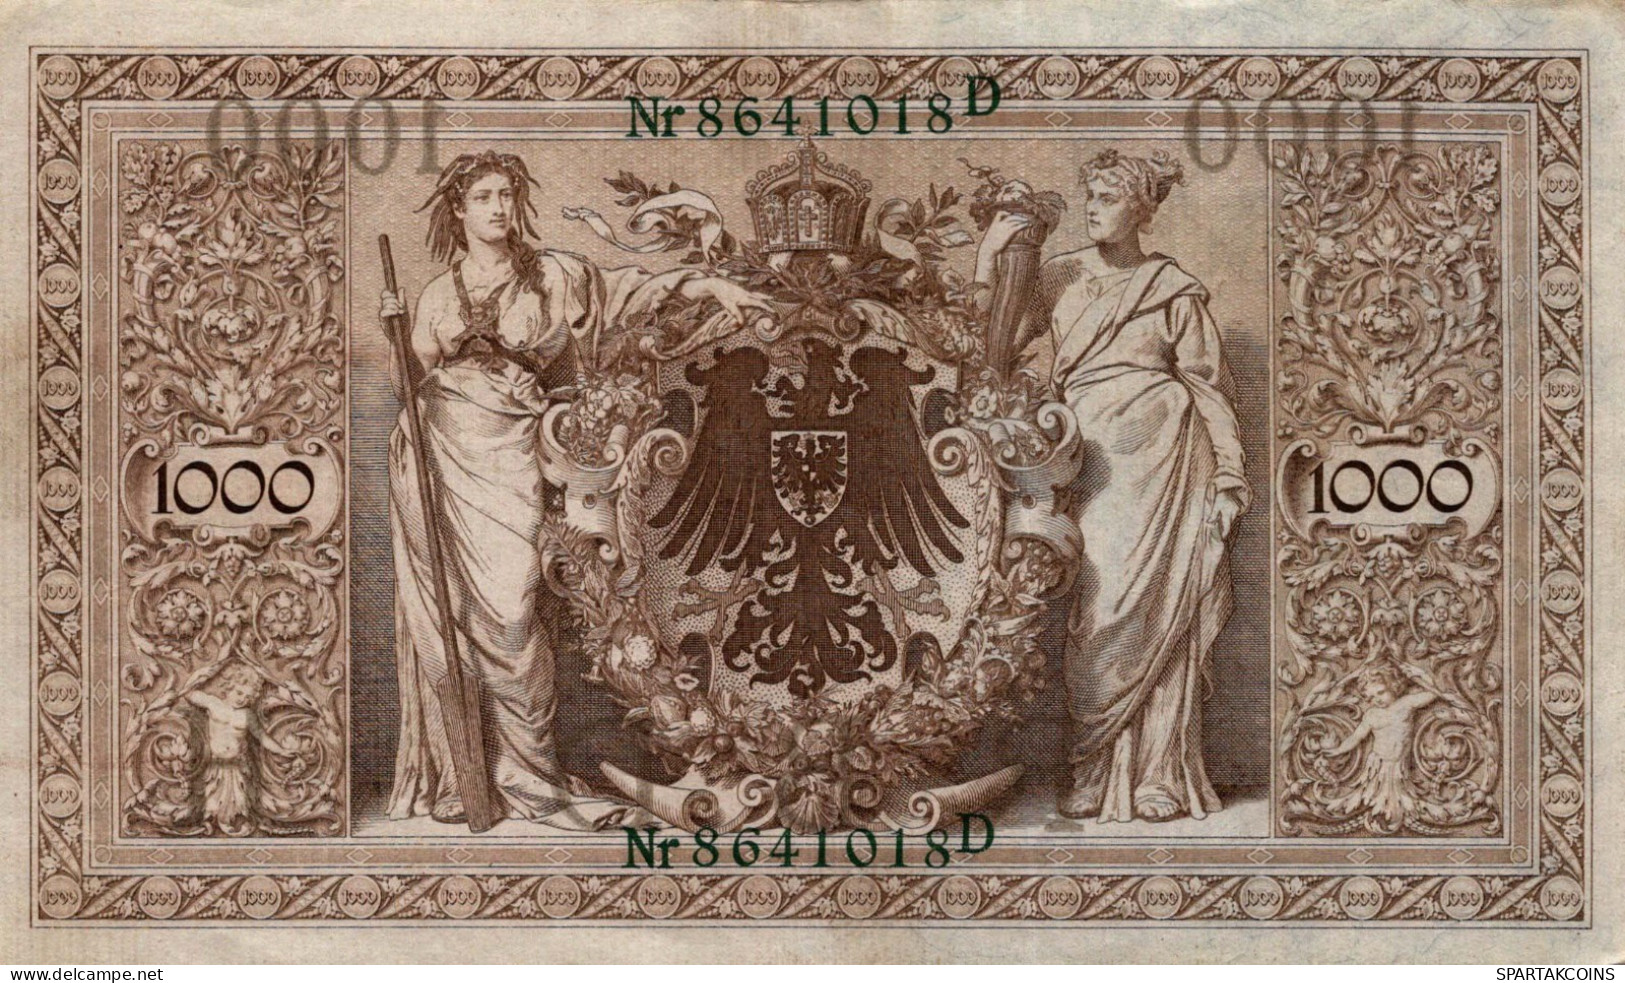 1000 MARK 1910 DEUTSCHLAND Papiergeld Banknote #PL369 - Lokale Ausgaben